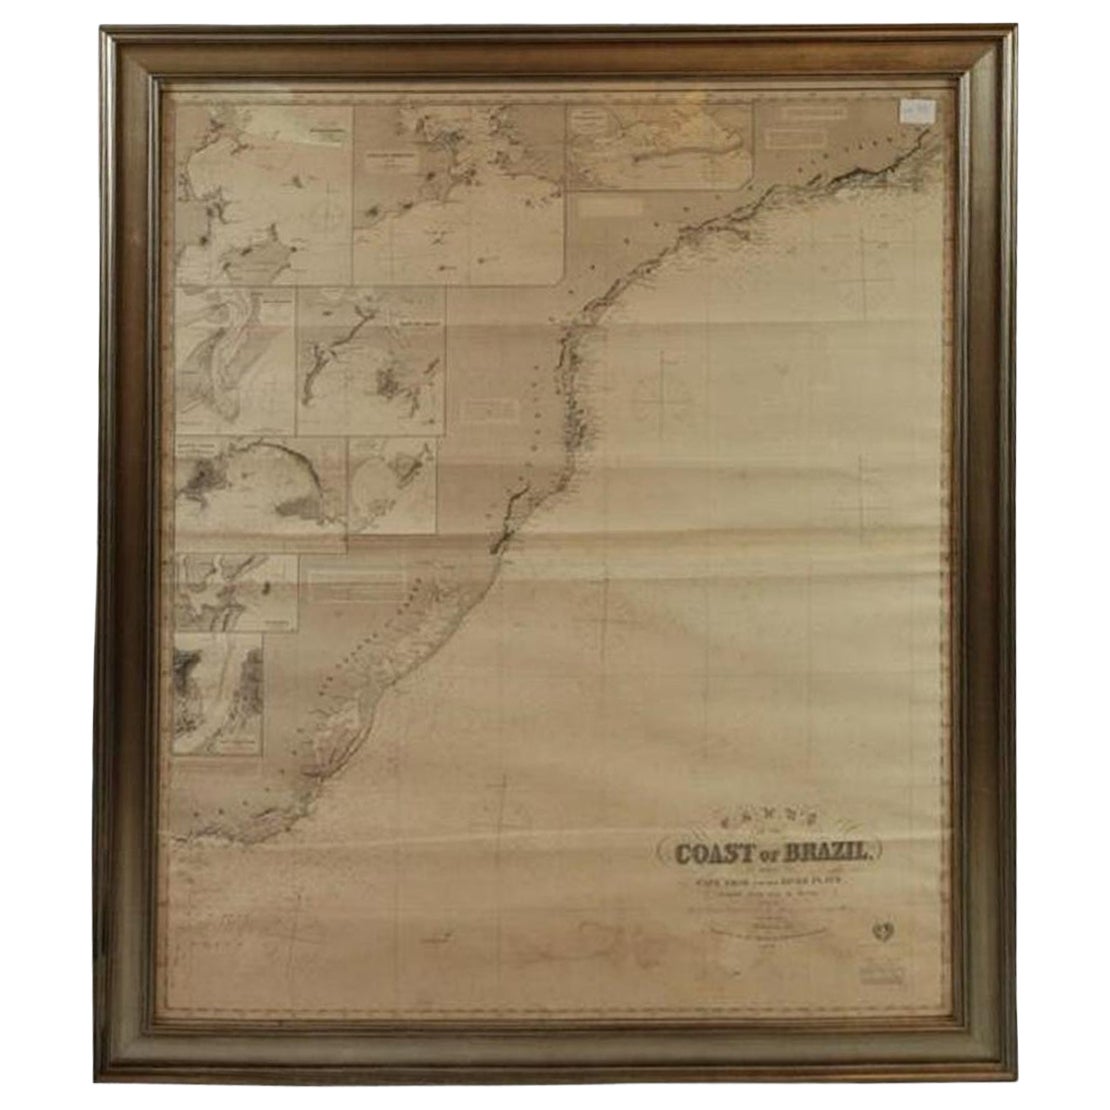 Ozeankarte der Küste Brasiliens aus dem Jahr 1876 mit Abbildung